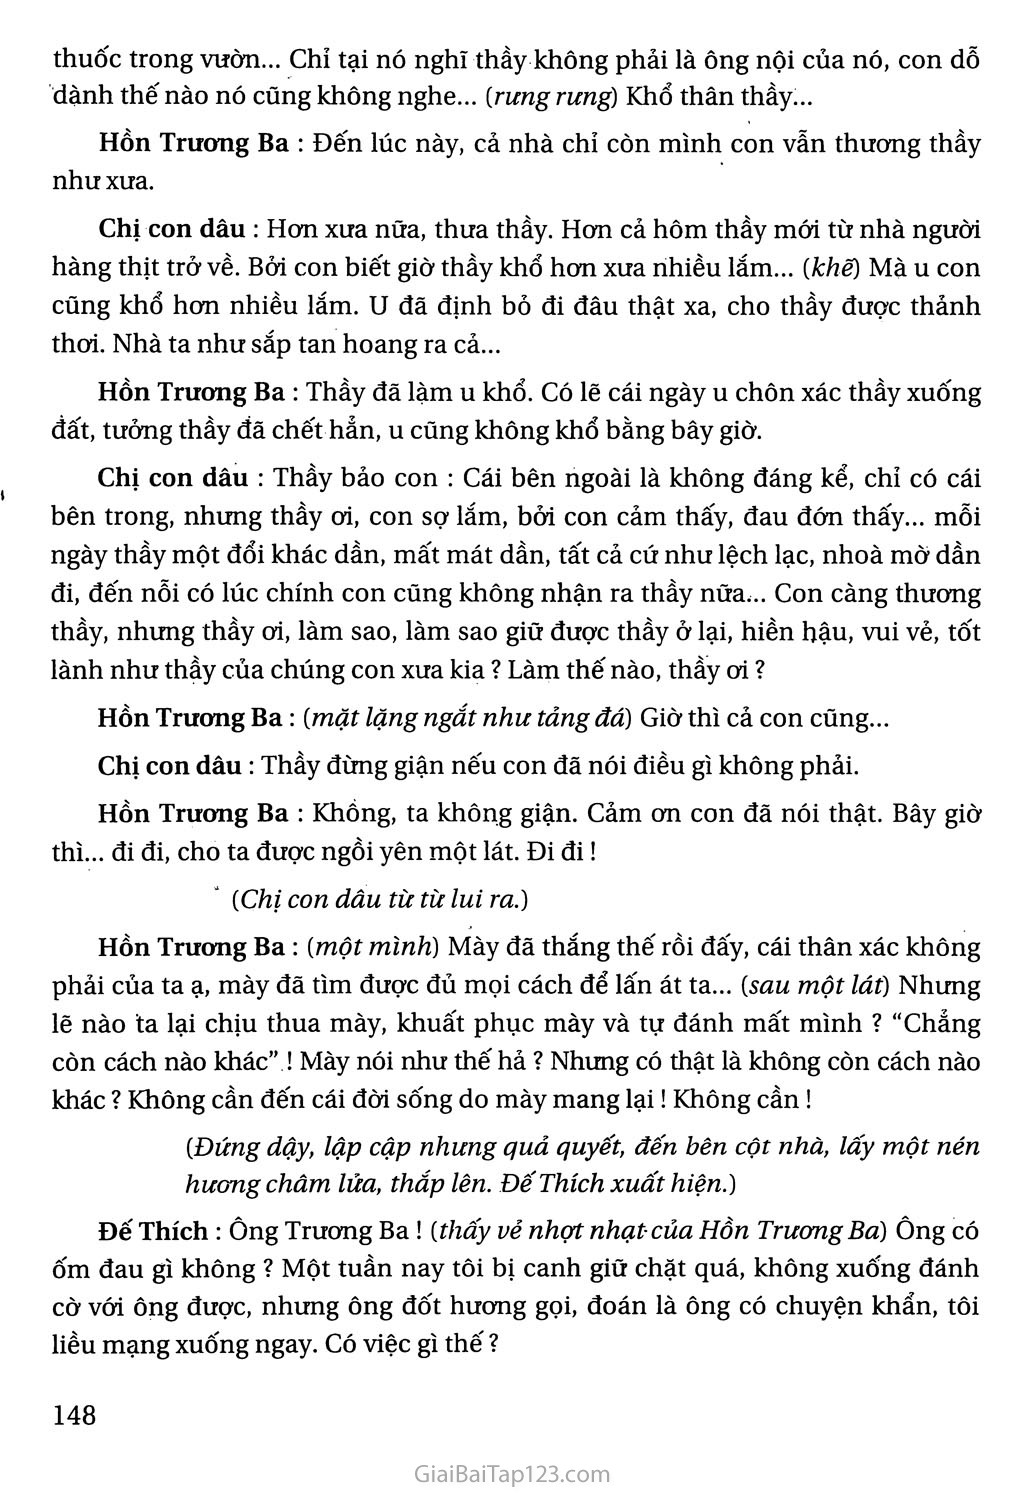 Hồn Trương Ba, da hàng thịt (trích) trang 7